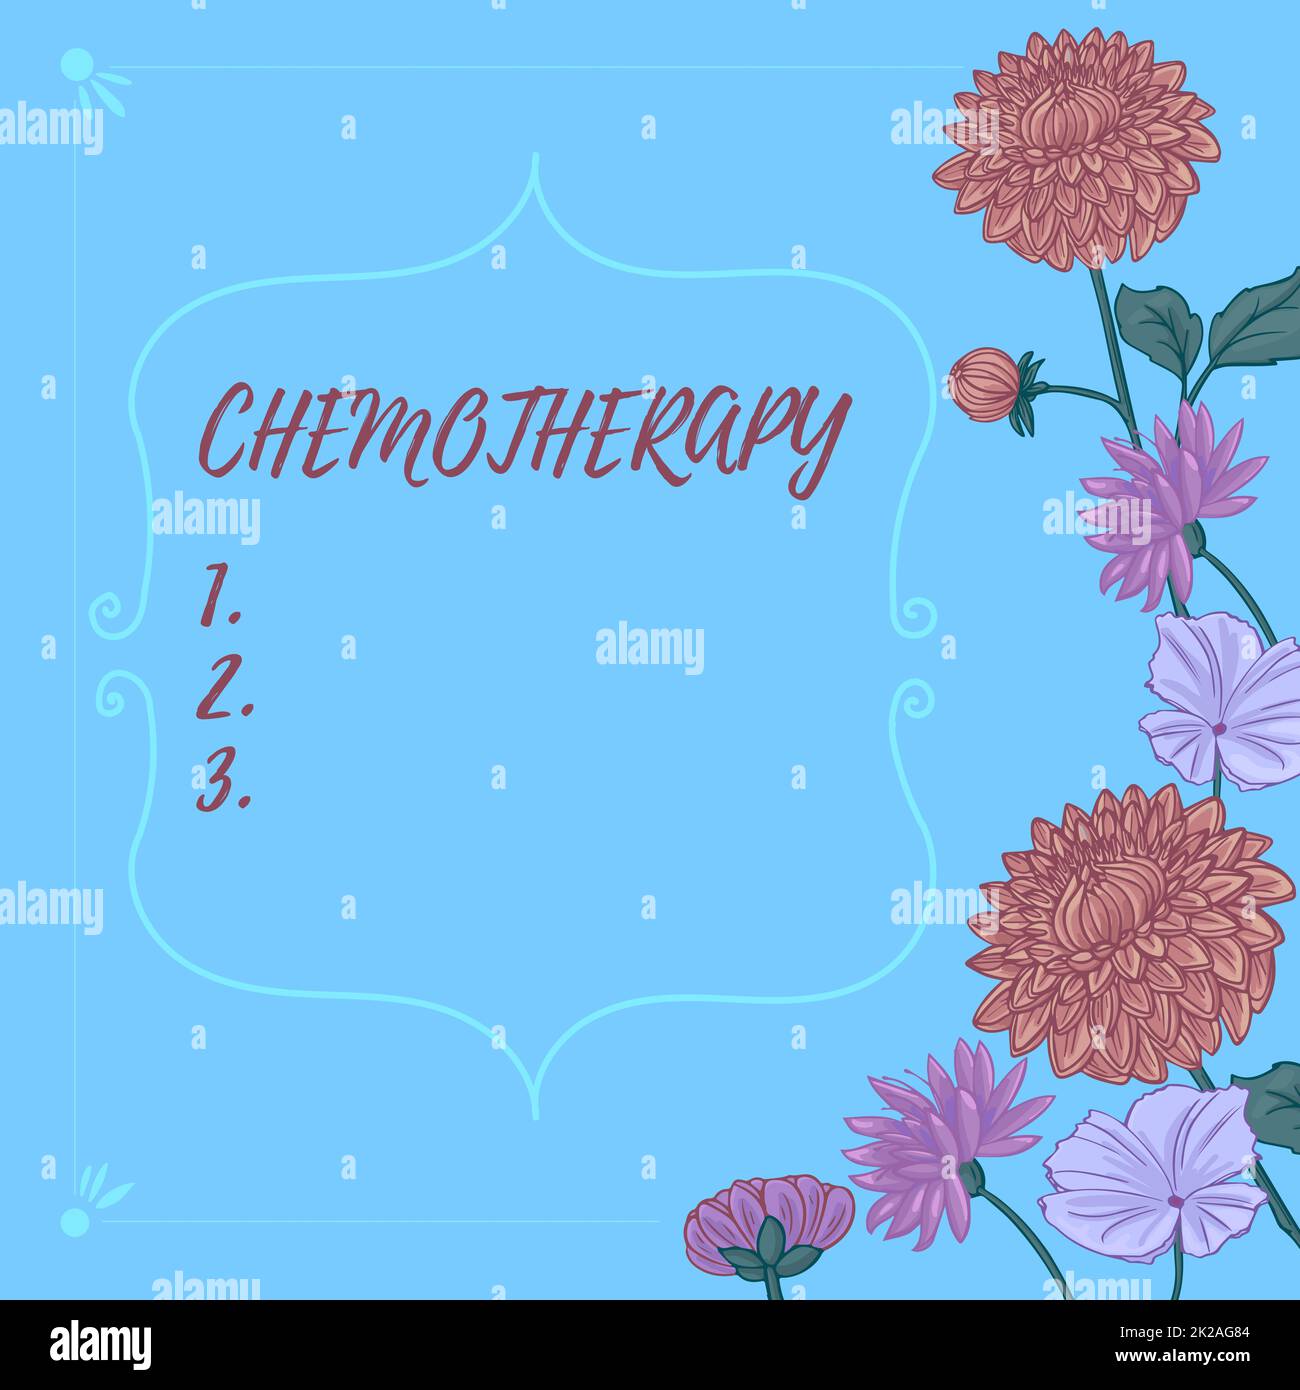 Konzeptionelle Bildunterschrift Chemotherapie, Geschäftsidee die Behandlung von Krankheiten durch den Einsatz chemischer Substanzen Textrahmen umgeben von sortierten Blumen Stockfoto